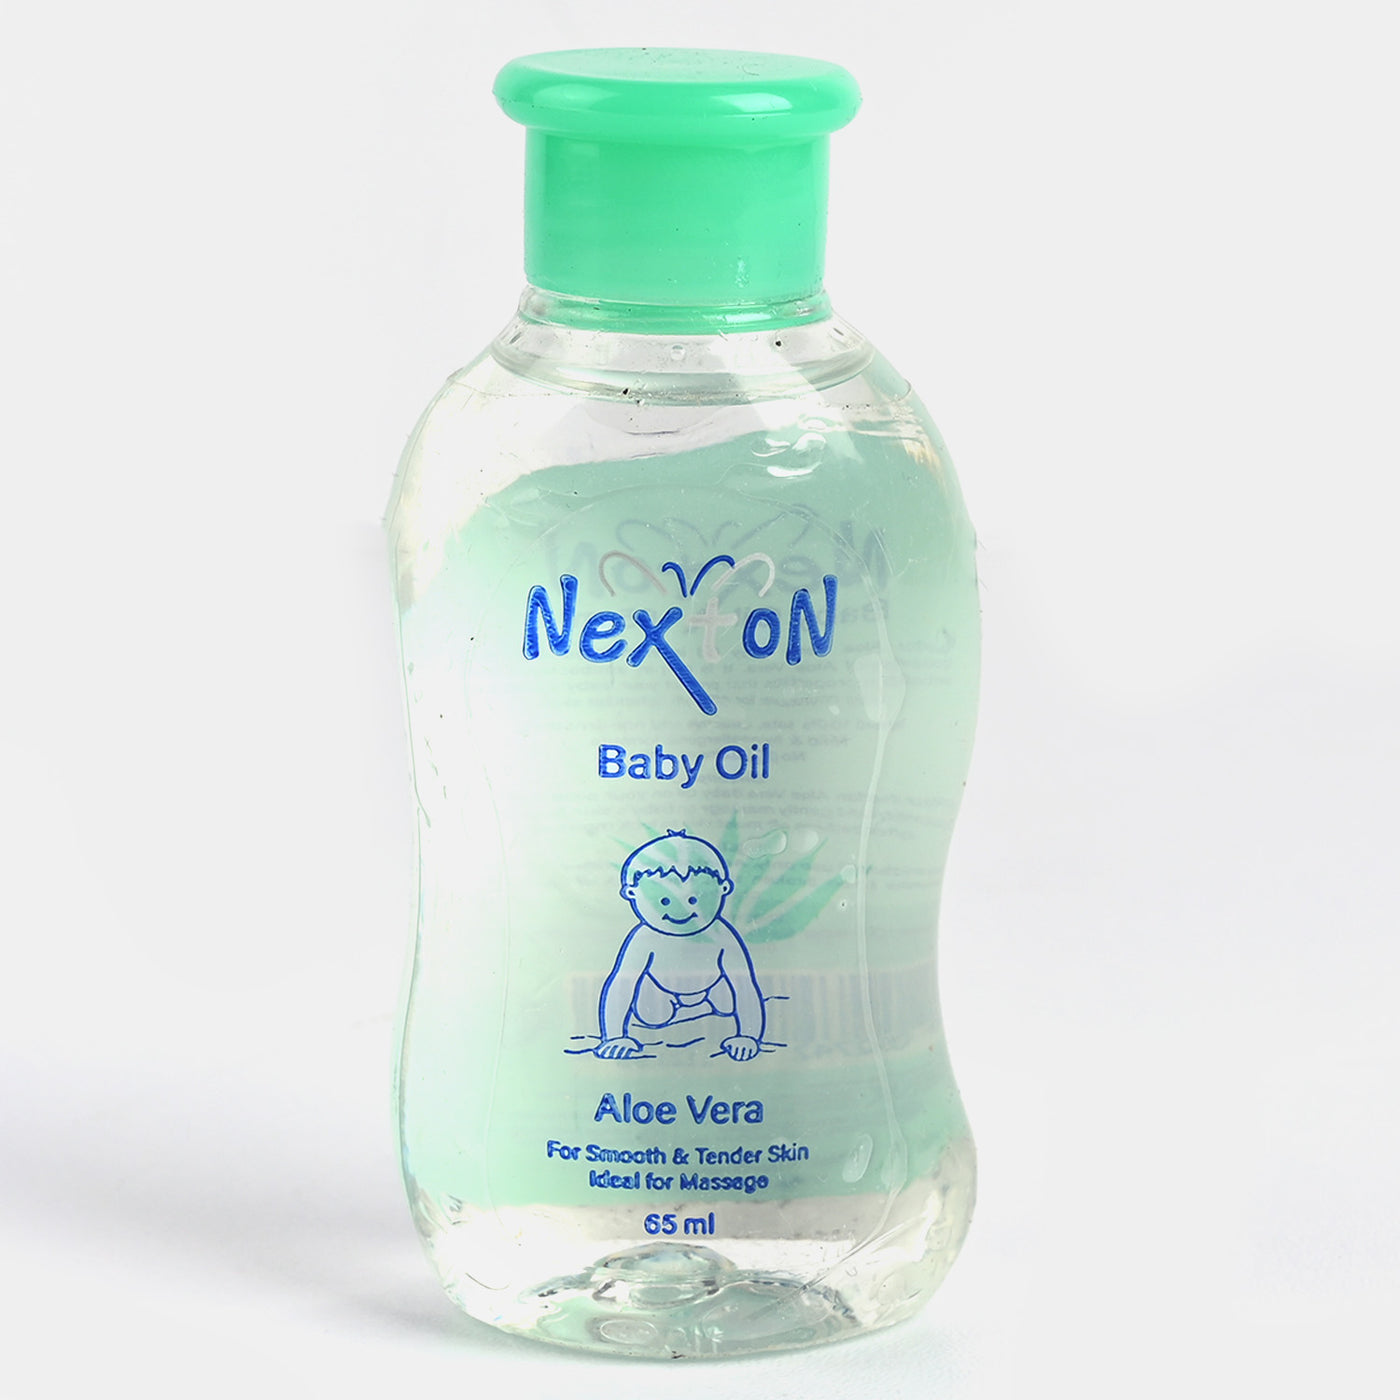 Nexton Baby Oil Aloe Vera 65ml